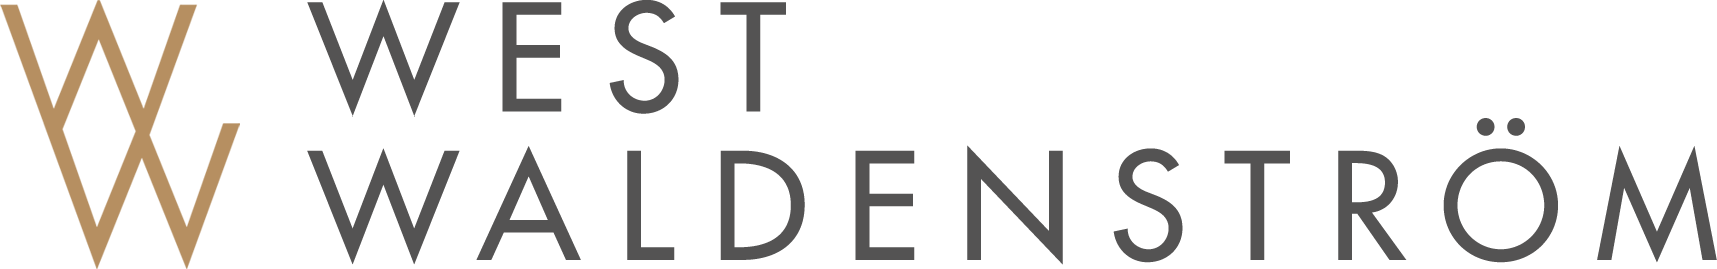 West Waldenströms logotyp, två guldiga W staplade snett på varandra till vänster, följt av efternamnen West Waldenström staplade rakt på varandra till höger, i färgen mörk-grå.